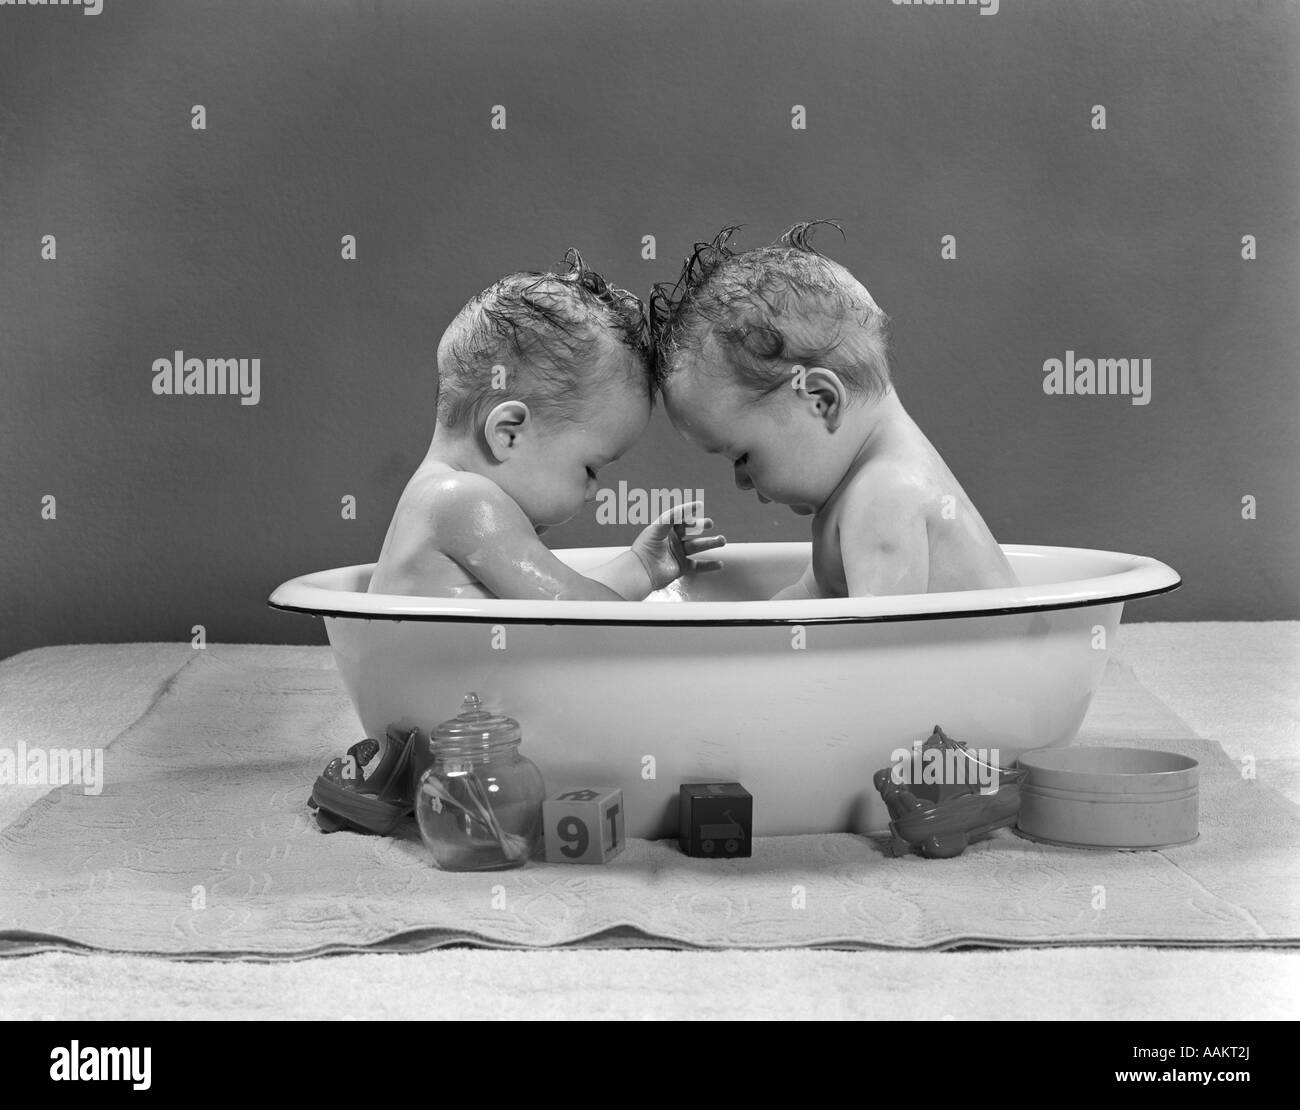 1950 TWIN BEBÉS sentados frente a frente en bañera metálica Foto de stock